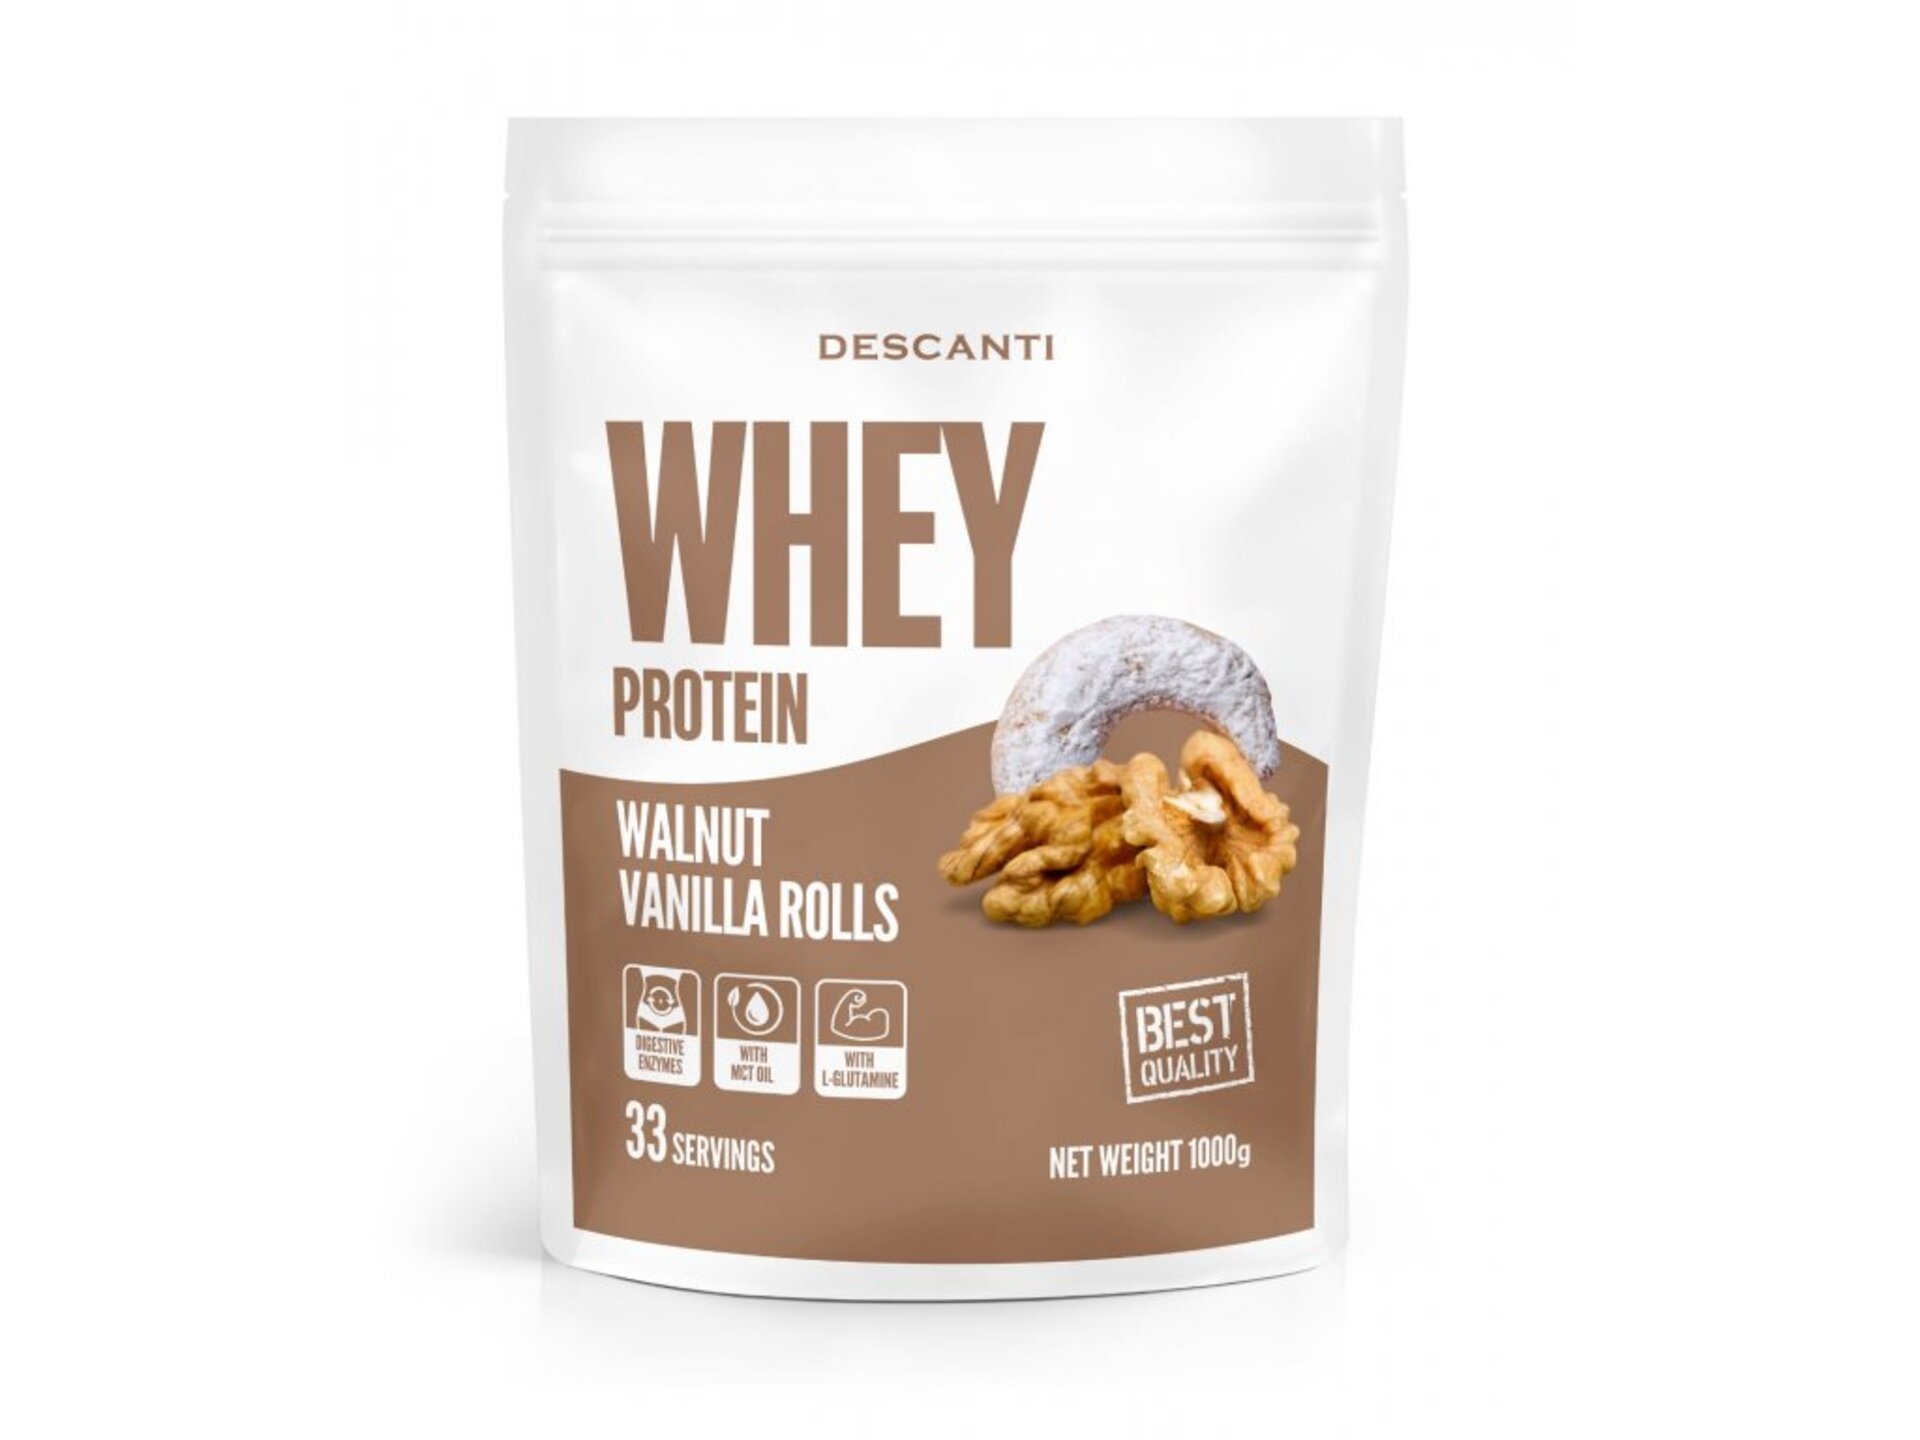 Descanti Whey protein Walnut Vanilla Rolls 1000 g